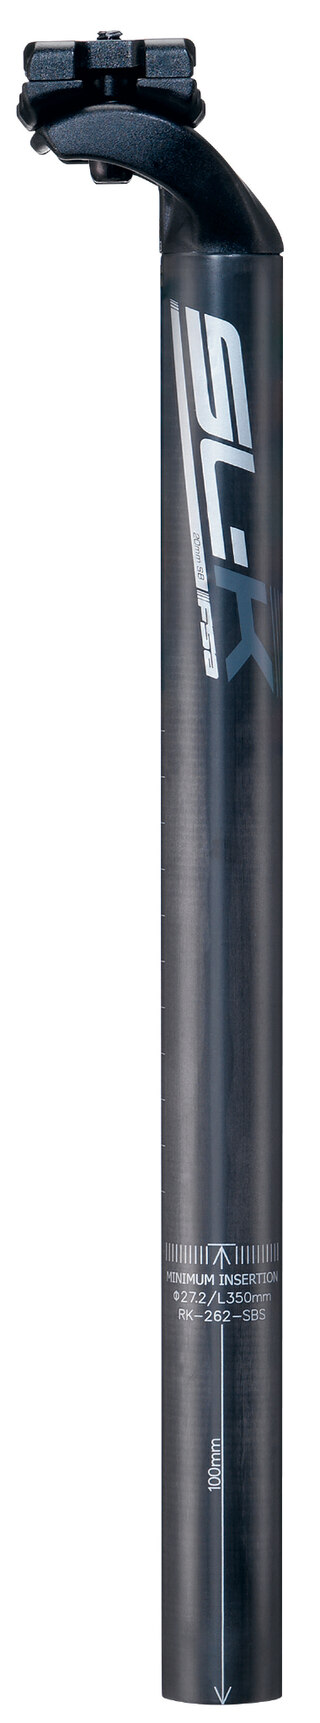 FSA SL-K SBS SB20 Karbon Setepinne Sort, 27,2 mm, 400 mm, WE/Di2, 221 g